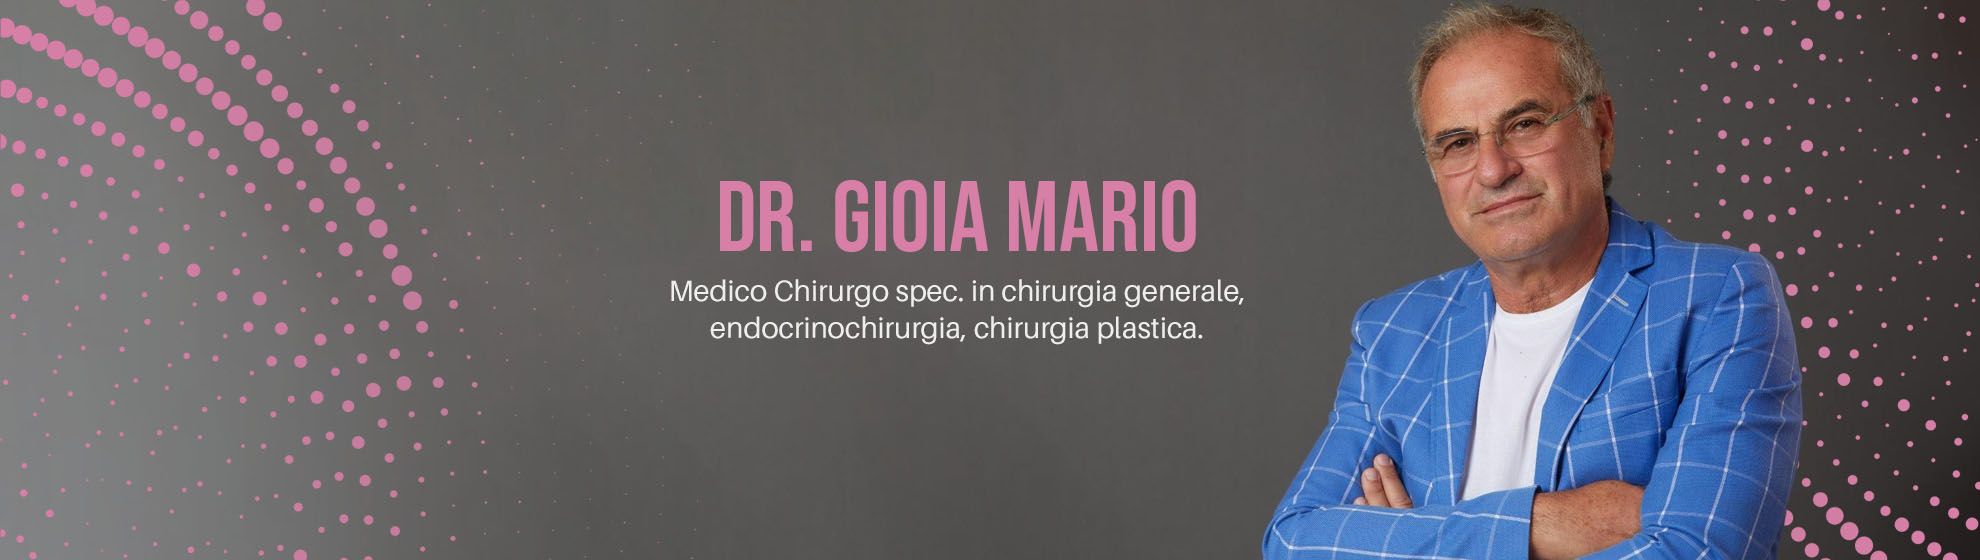 Dr. Gioia Mario